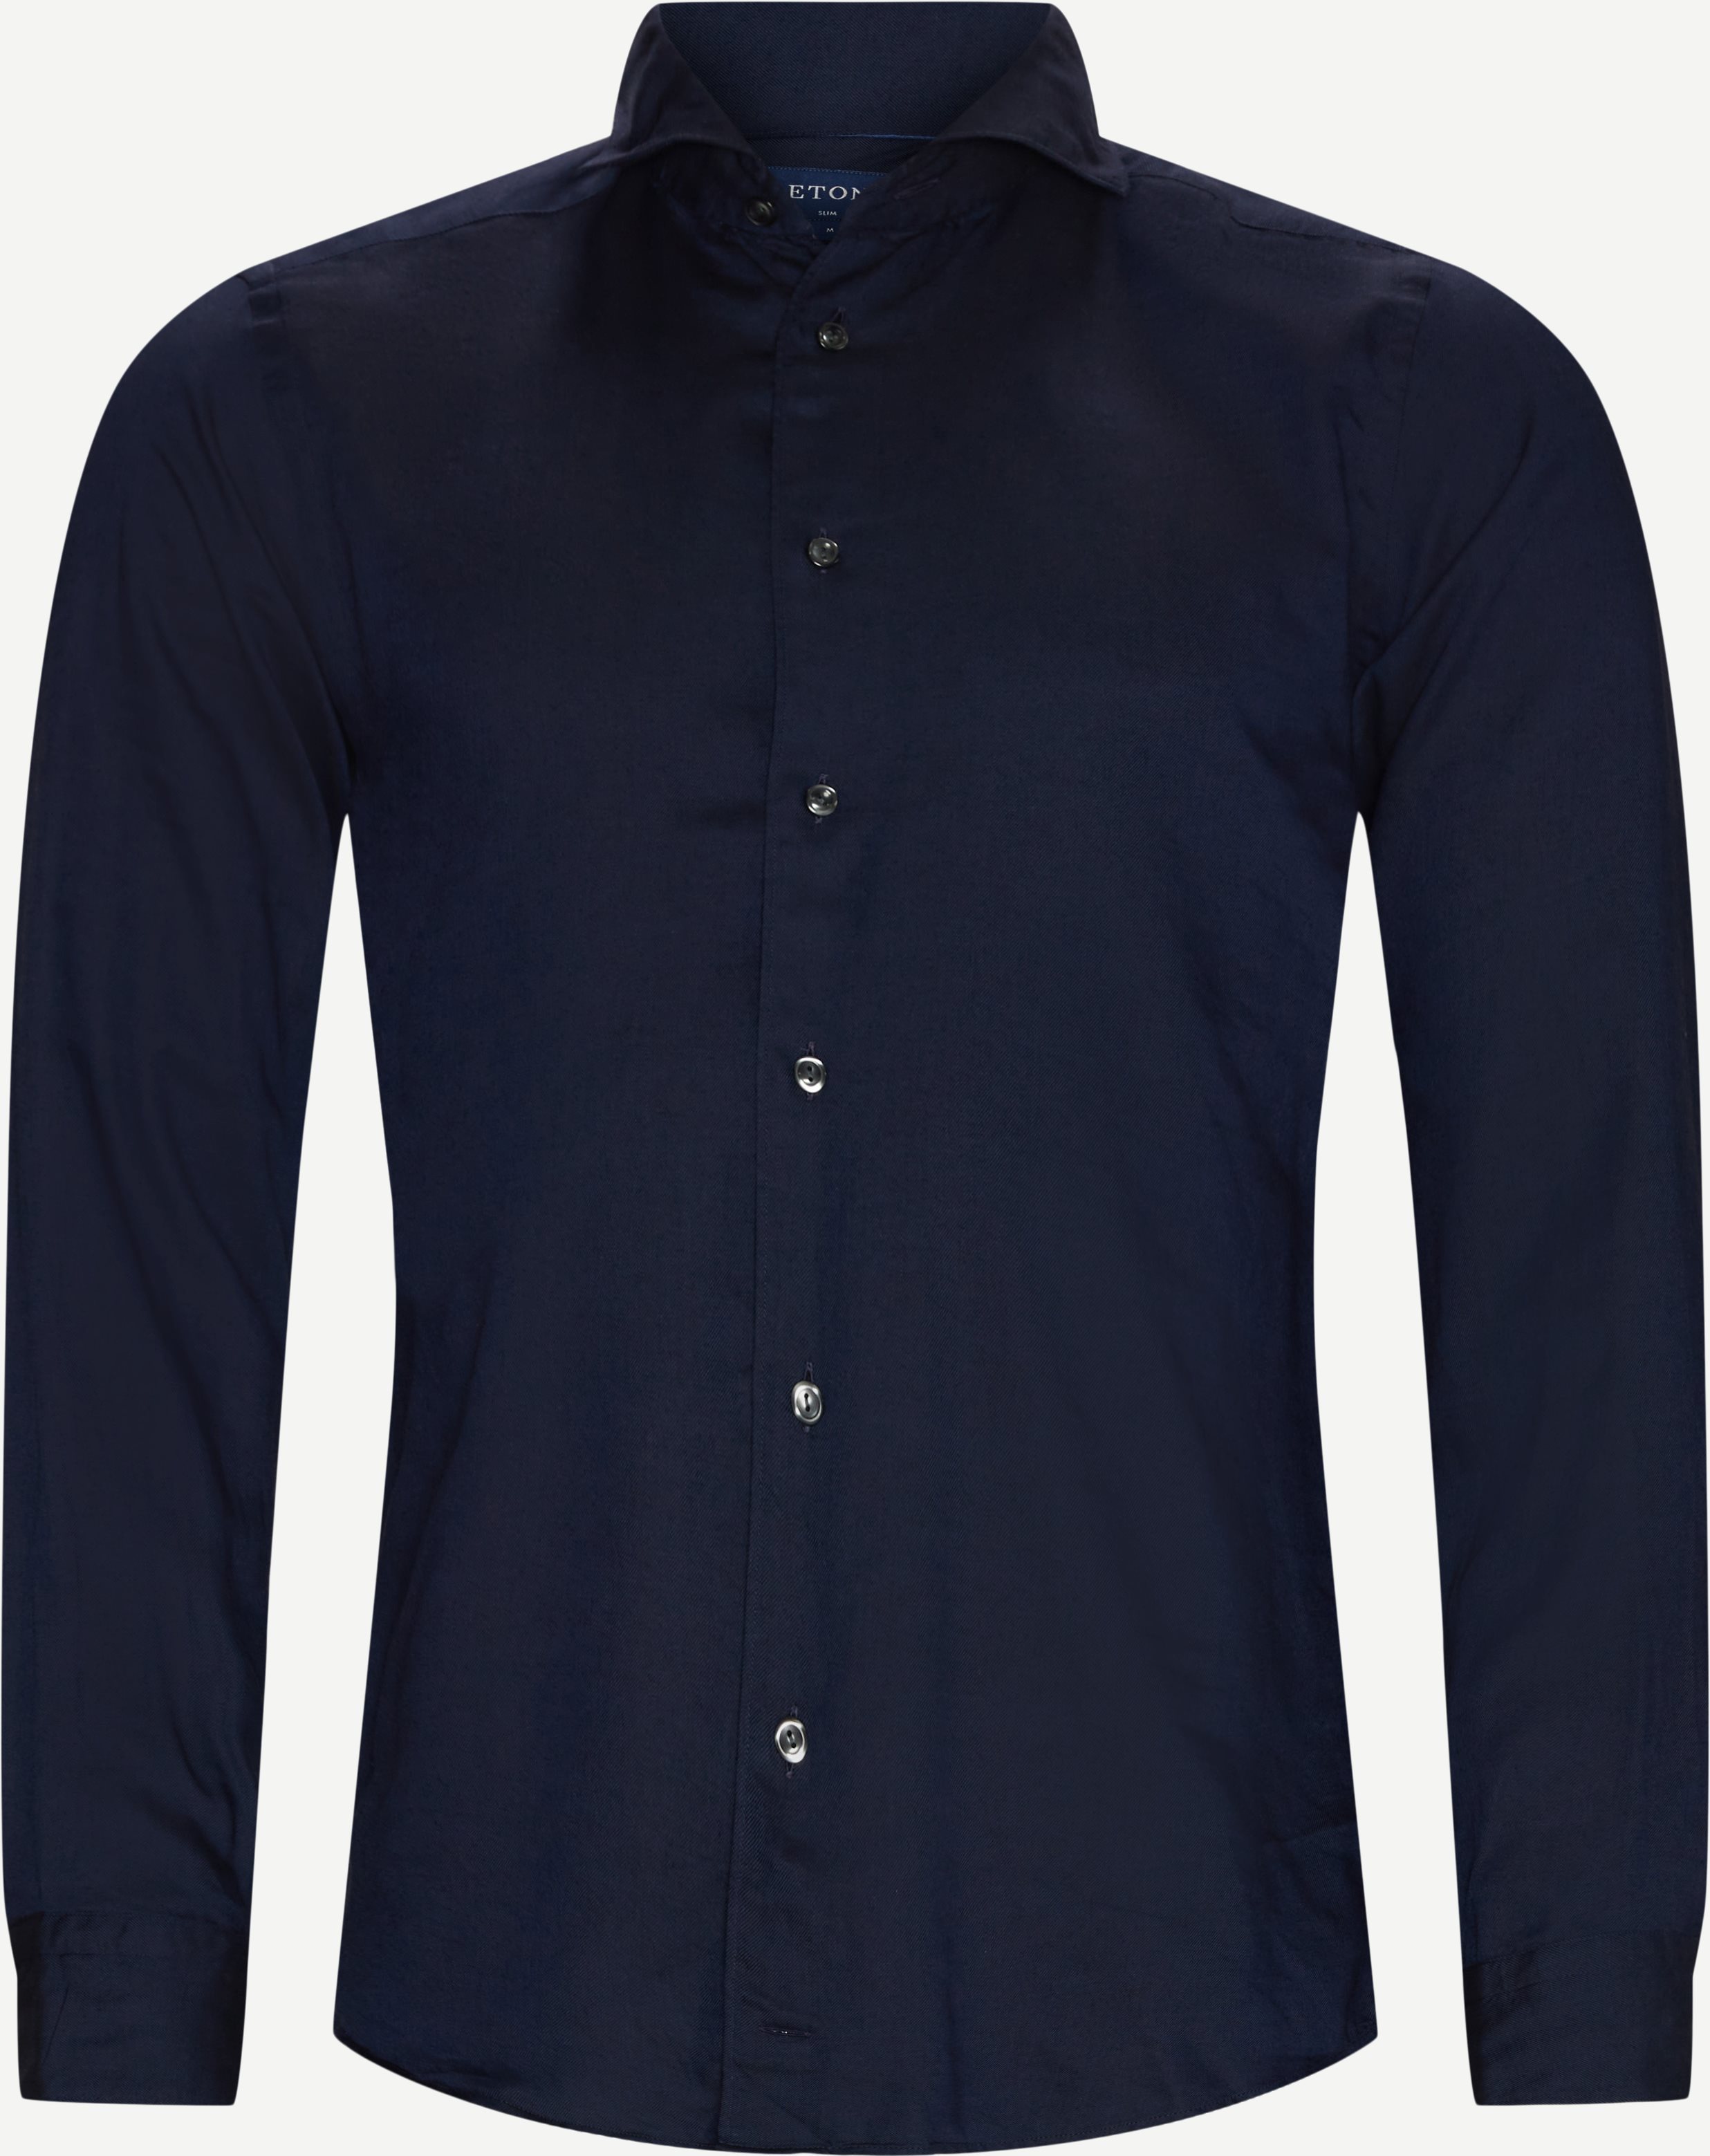 Bomull - Tencel Soft Shirt - Skjortor - Blå